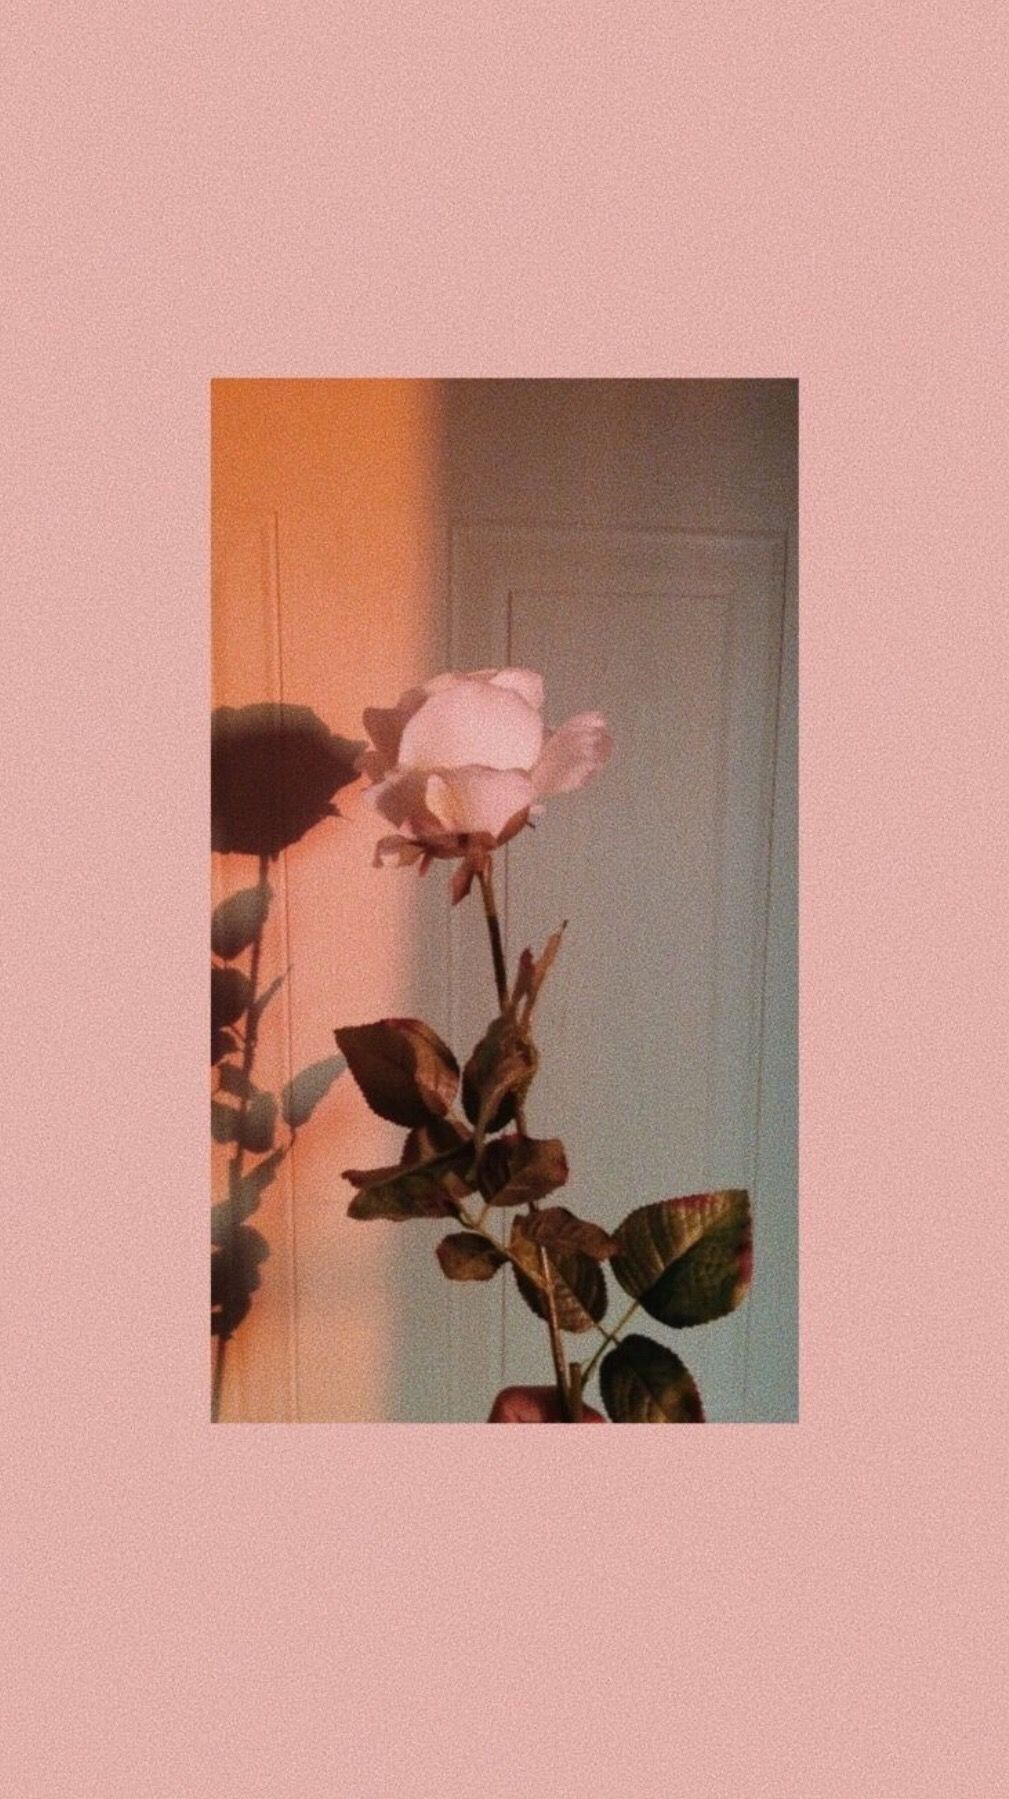 Pastel Aesthetic Rose Wallpapers On Wallpaperdog Nouveau fond d'ecran flamant rose a telecharger pour le mois de septembre. pastel aesthetic rose wallpapers on